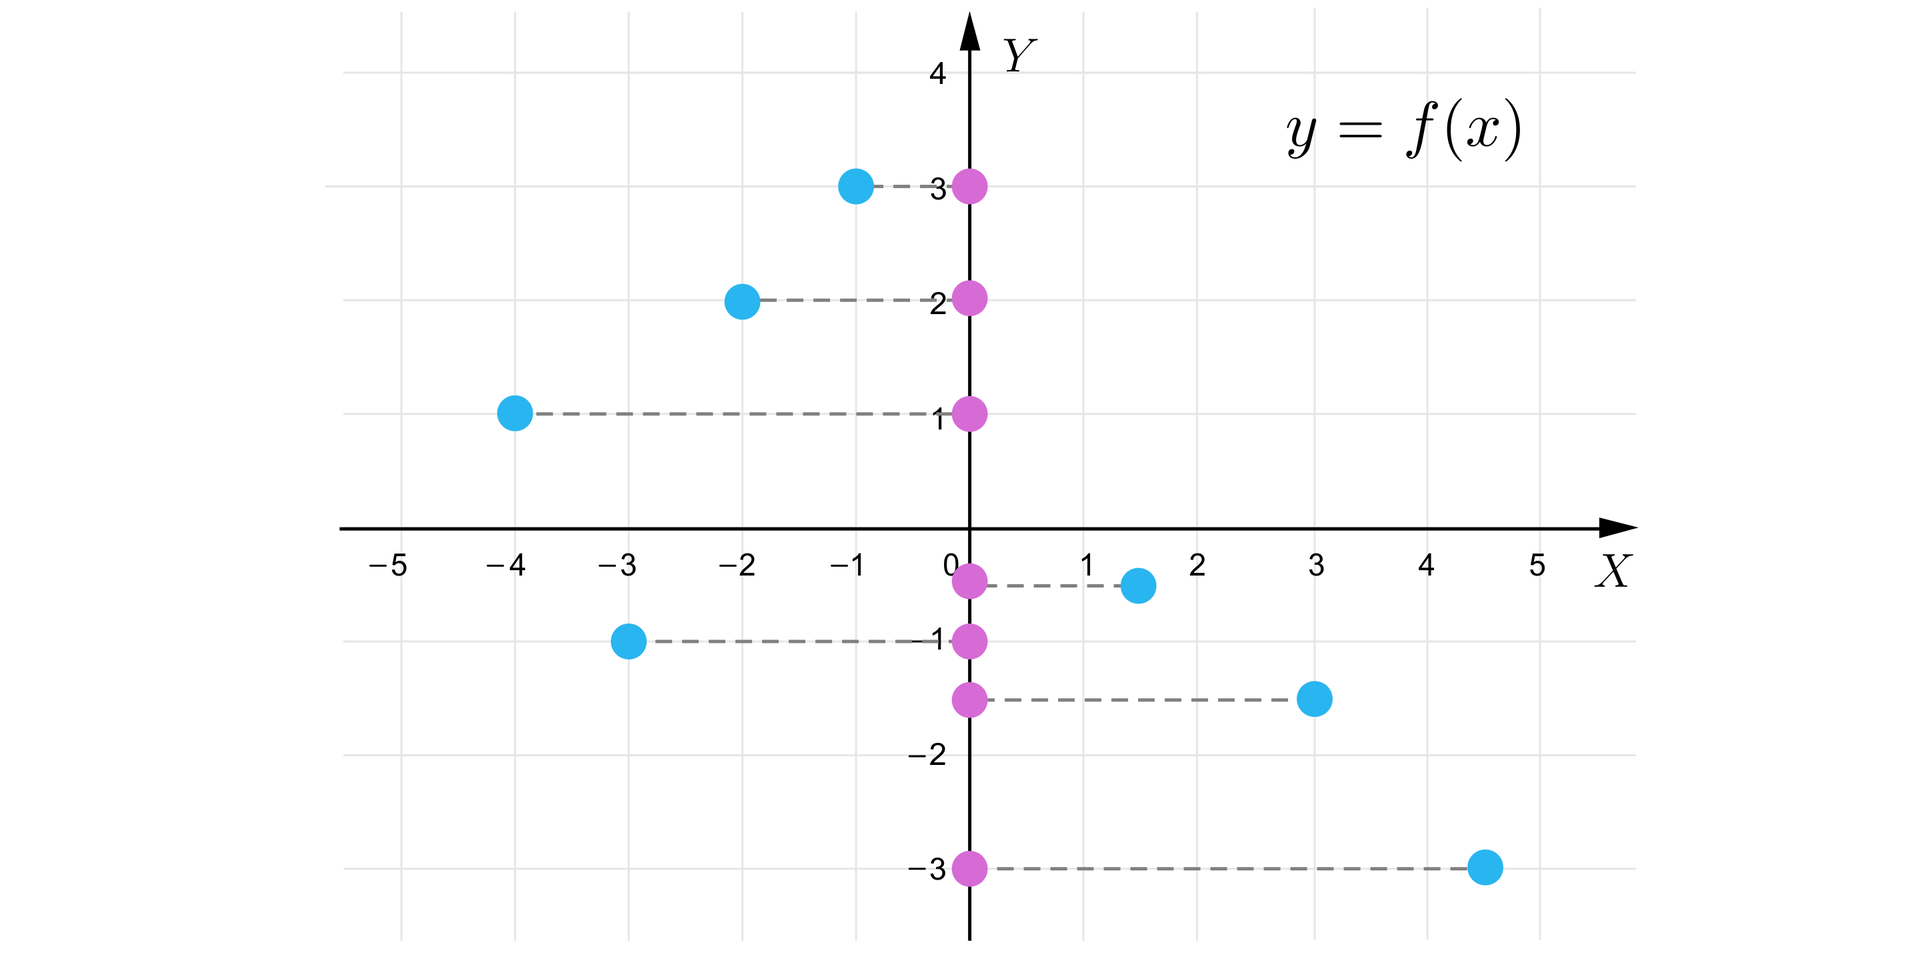 Ilustracja przedstawia wyżej opisany wykres funkcji, przy czym tutaj mamy rzut wykresu na oś Y. Rzut ten jest zbiorem wartości przyjmowanych przez funkcję i jest to w tym przypadku zbiór siedmioelementowy zawierający punkty na wysokościach: -3, -112, -1, -12, 1, 2, 3.